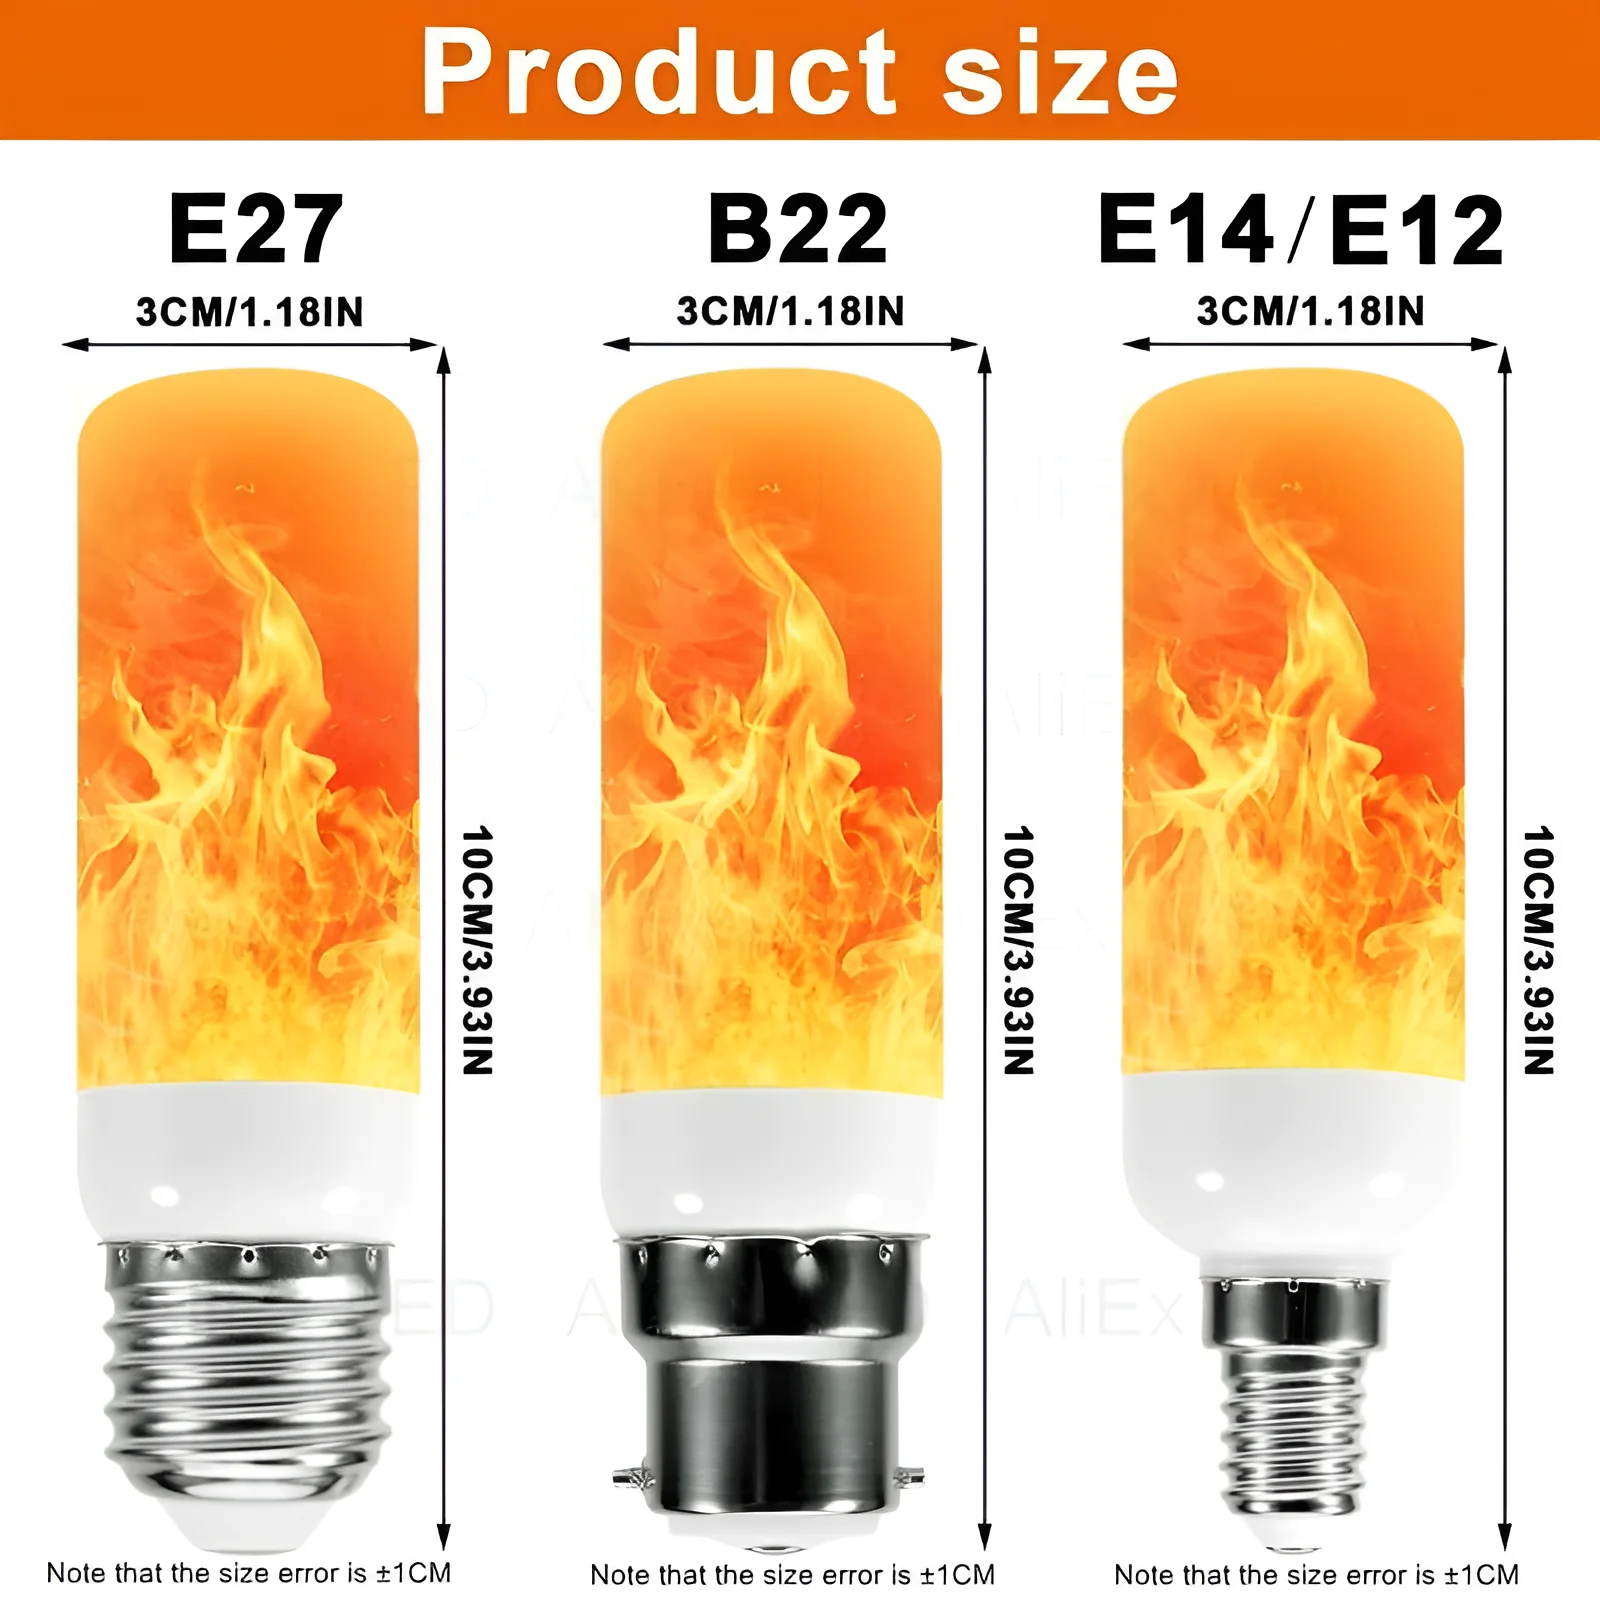 USB E14 E27 B22 Led Simulated Flame Bulbs 9W AC85-265V Luces Home Electronic Accessories Lamp Flame light Effect Bulbs Lampada